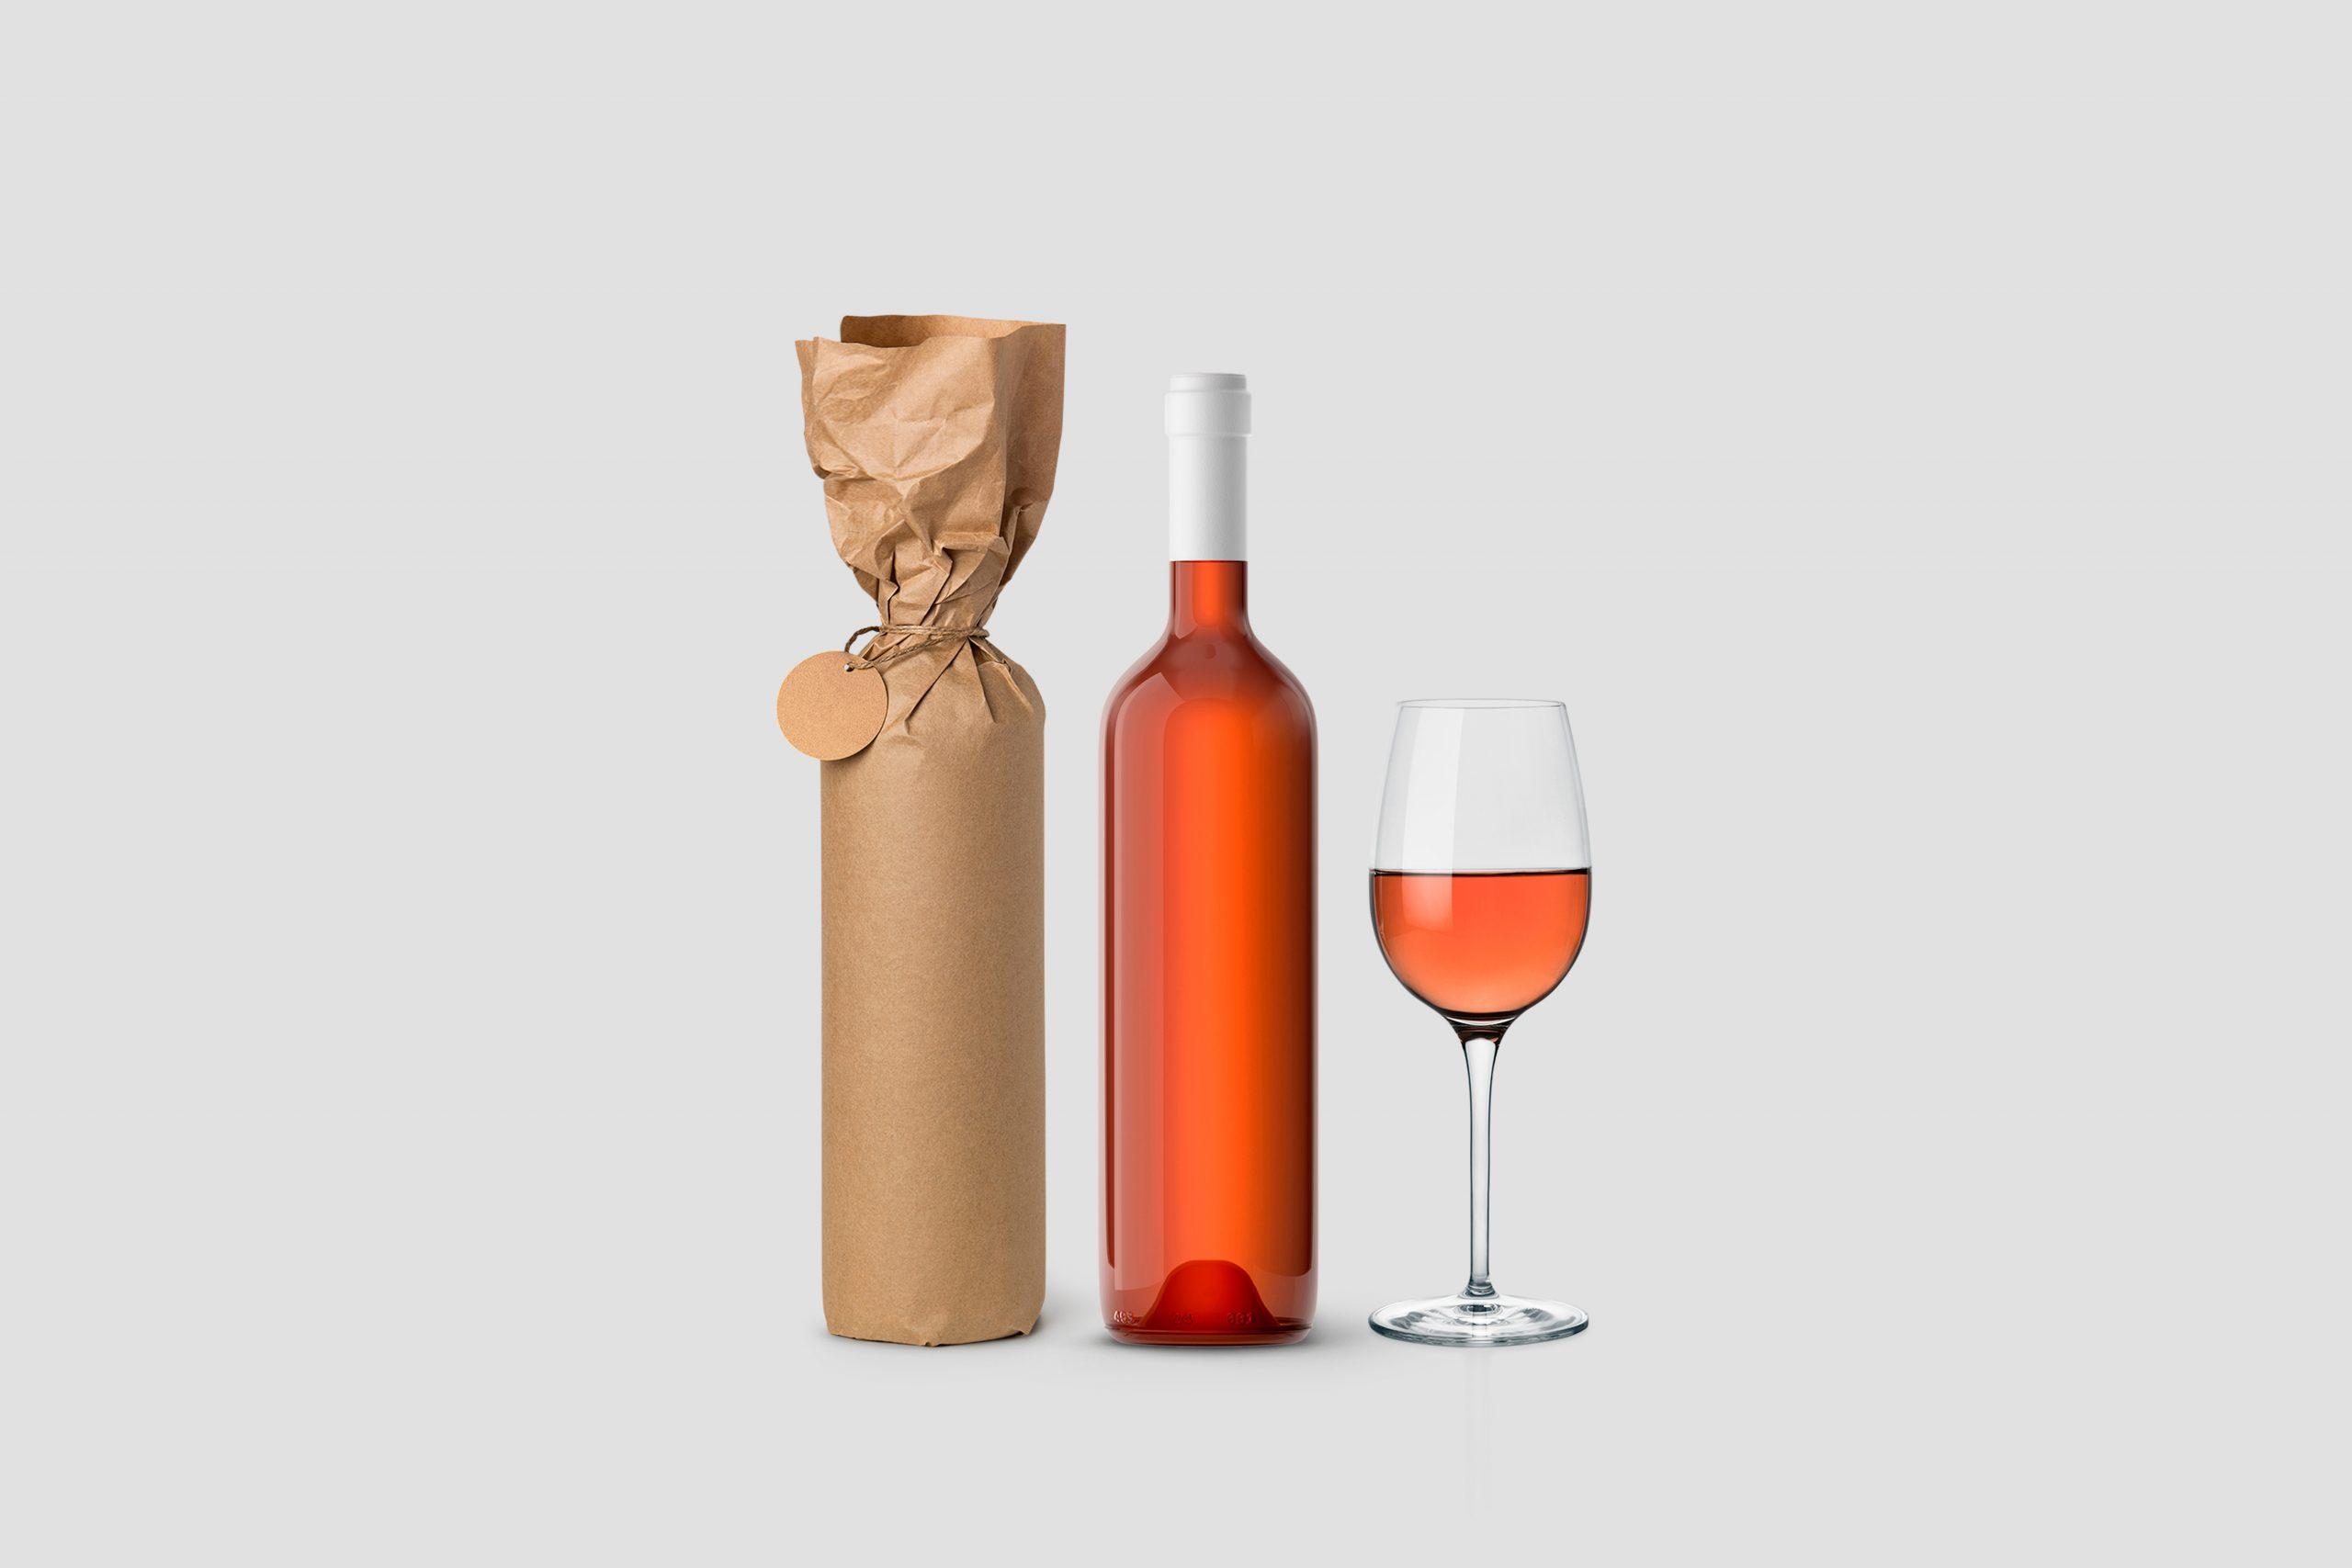 Weinflasche in Papier eingewickelt mit Etikett und Glas auf weißem Hintergrund